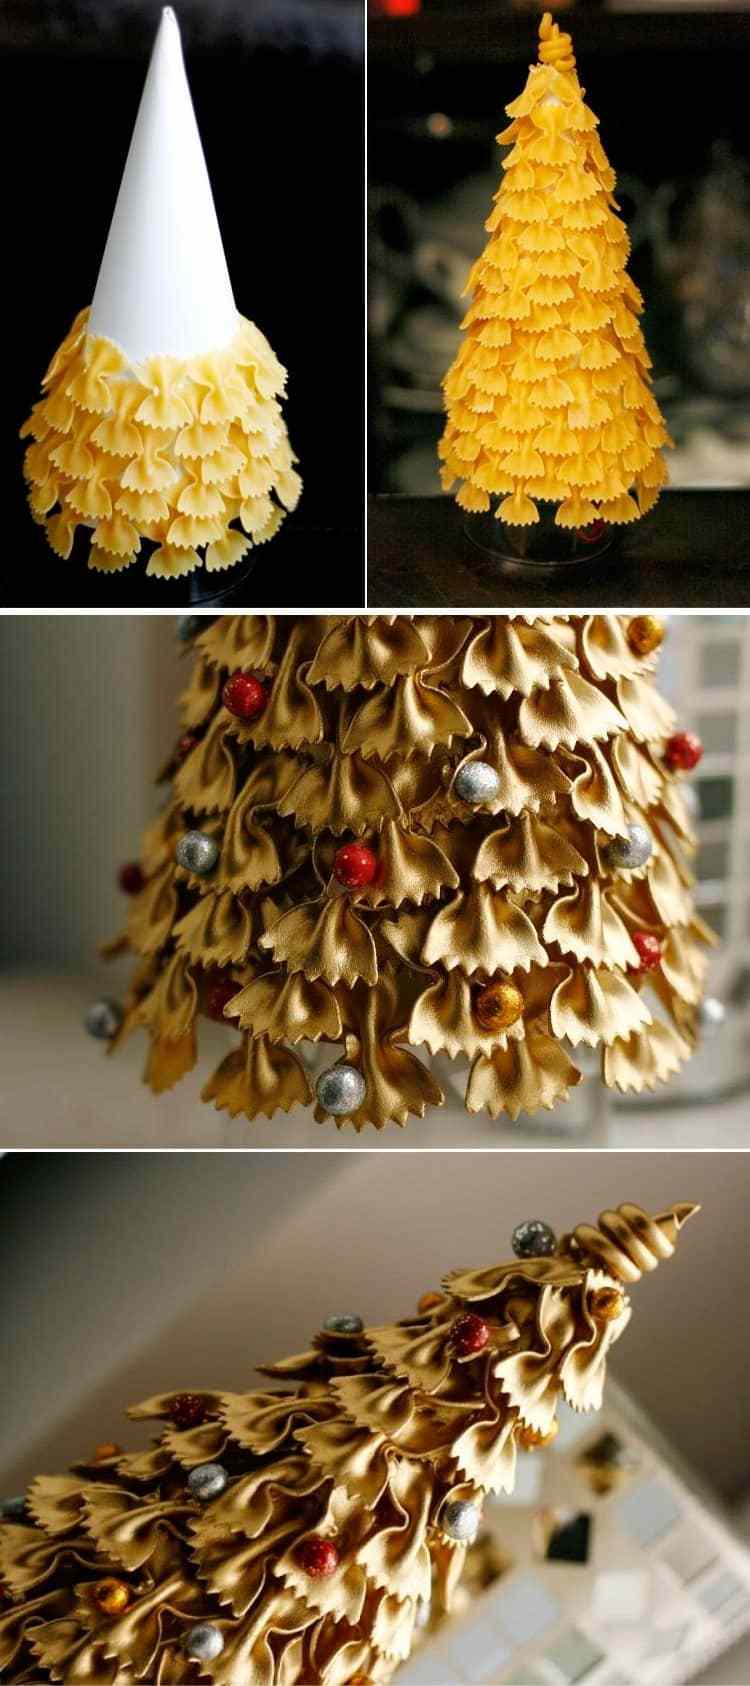 اصنع شجرة عيد الميلاد الخاصة بك من الستايروفوم والمعكرونة